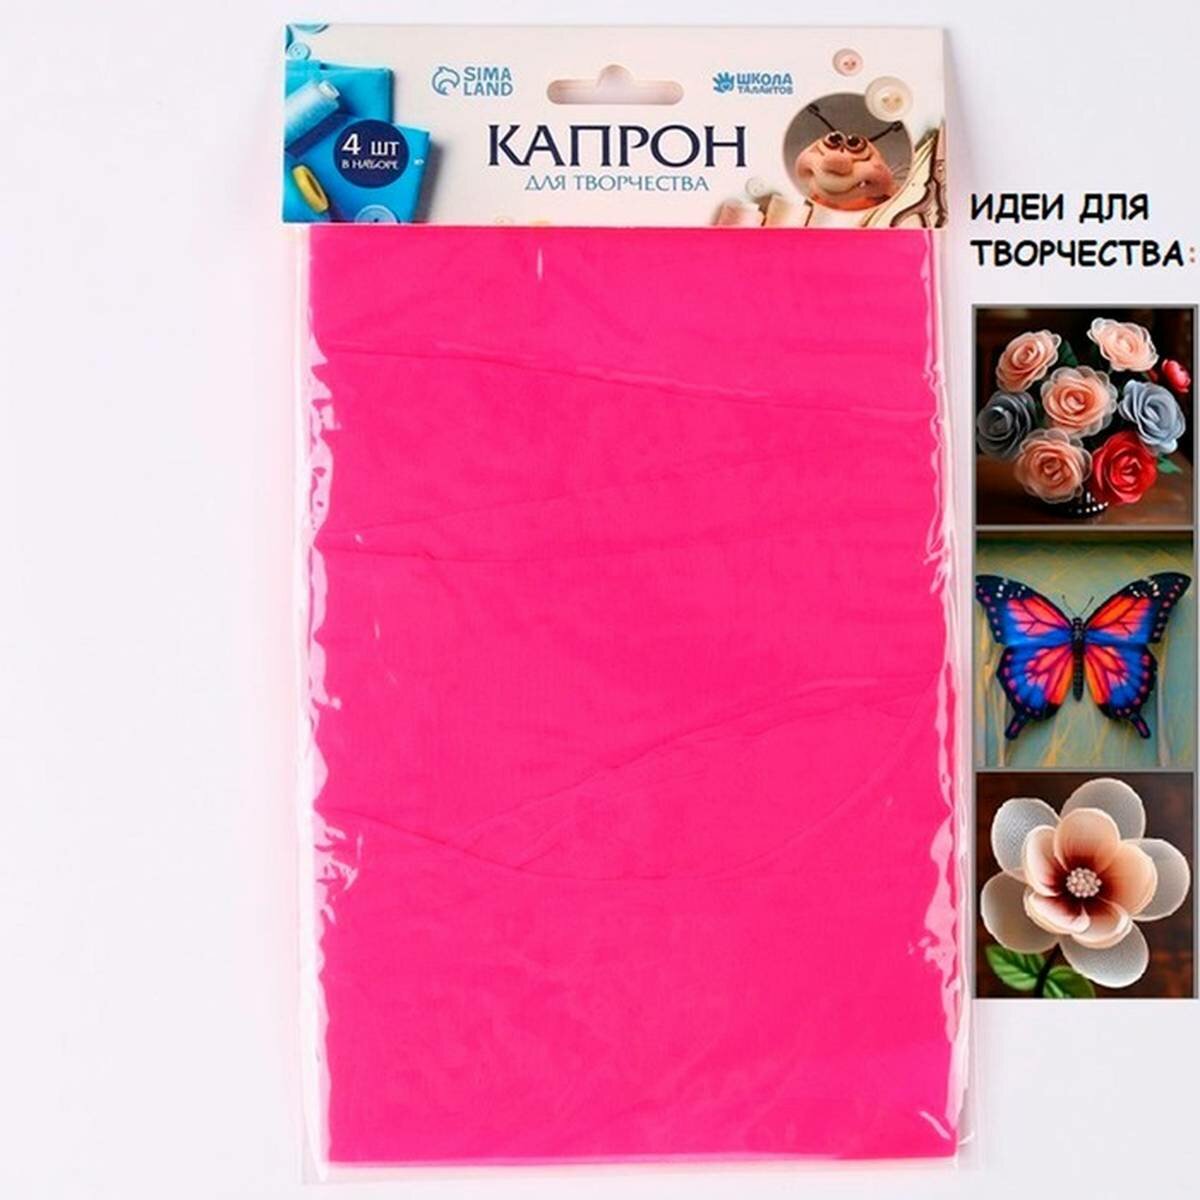 Ткань для рукоделия Школа талантов - капрон для кукол и цветов, 45x6 см, розовый, 4 шт в наборе